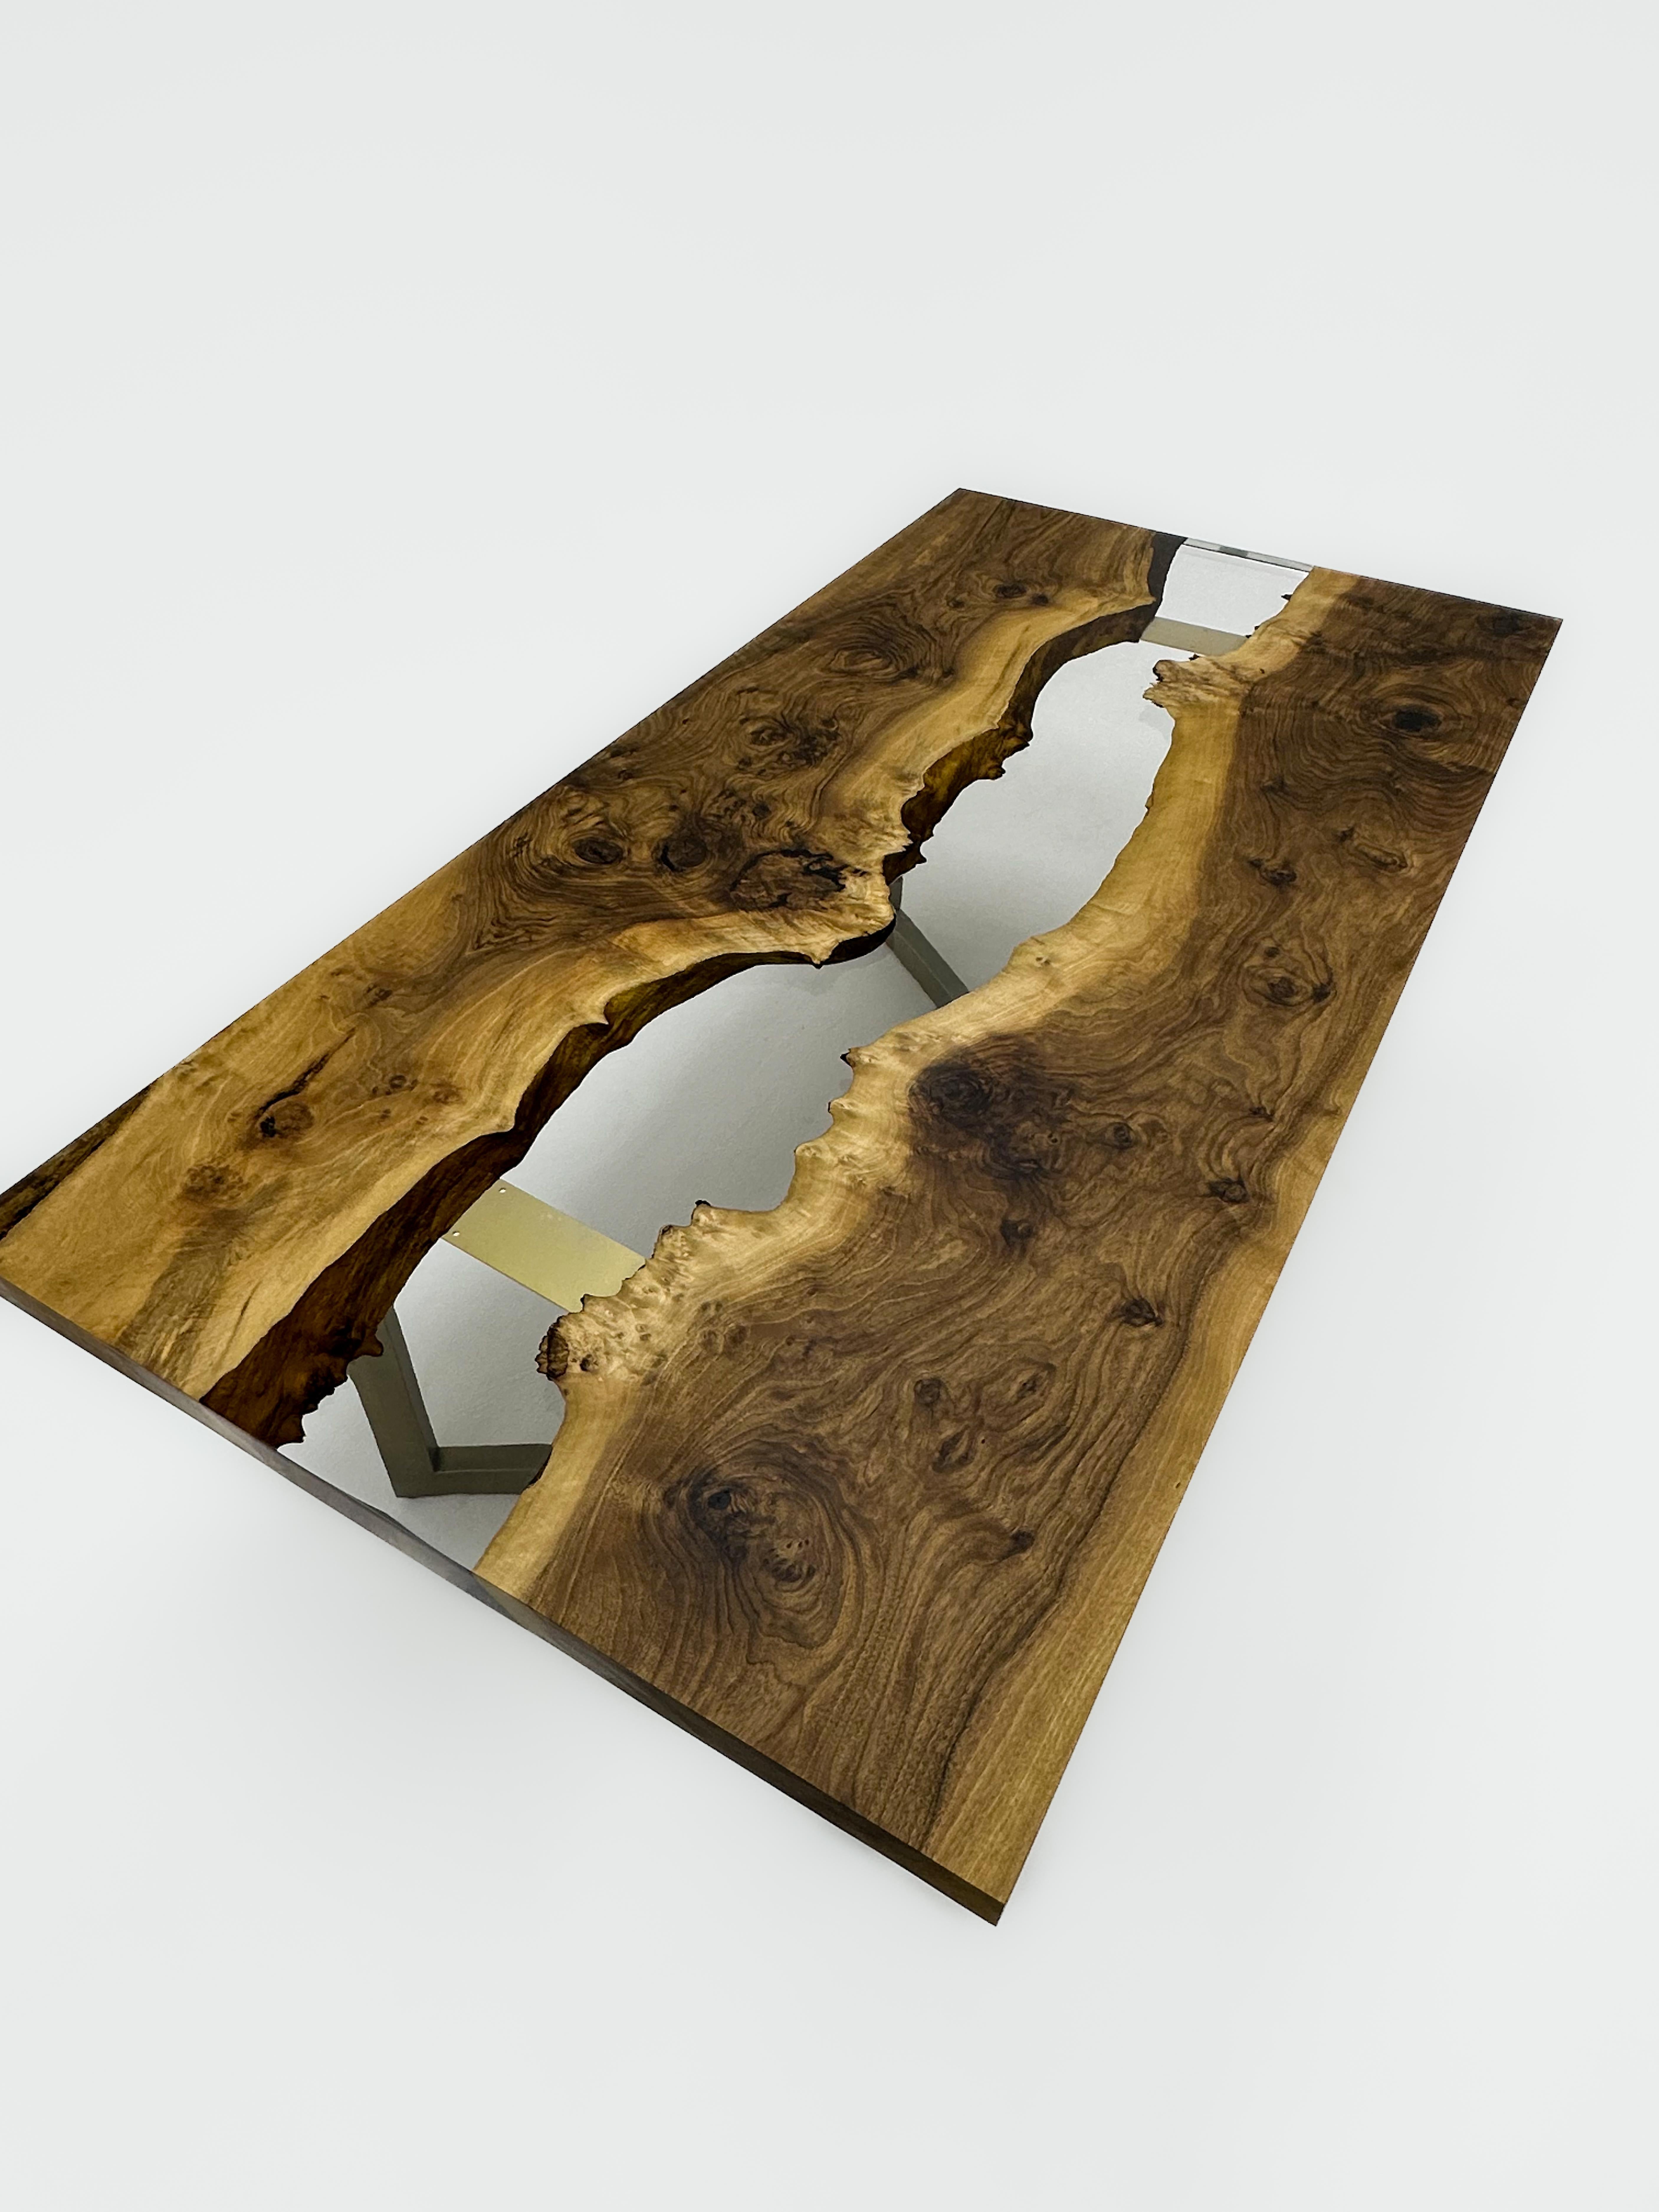 Nussbaum Custom Clear Epoxidharz Esstisch 

Dieser Tisch ist aus 500 Jahre altem Walnussholz gefertigt. Die Maserung und die Struktur des Holzes beschreiben, wie ein natürliches Walnussholz aussieht.
Er kann als Esstisch oder als Konferenztisch